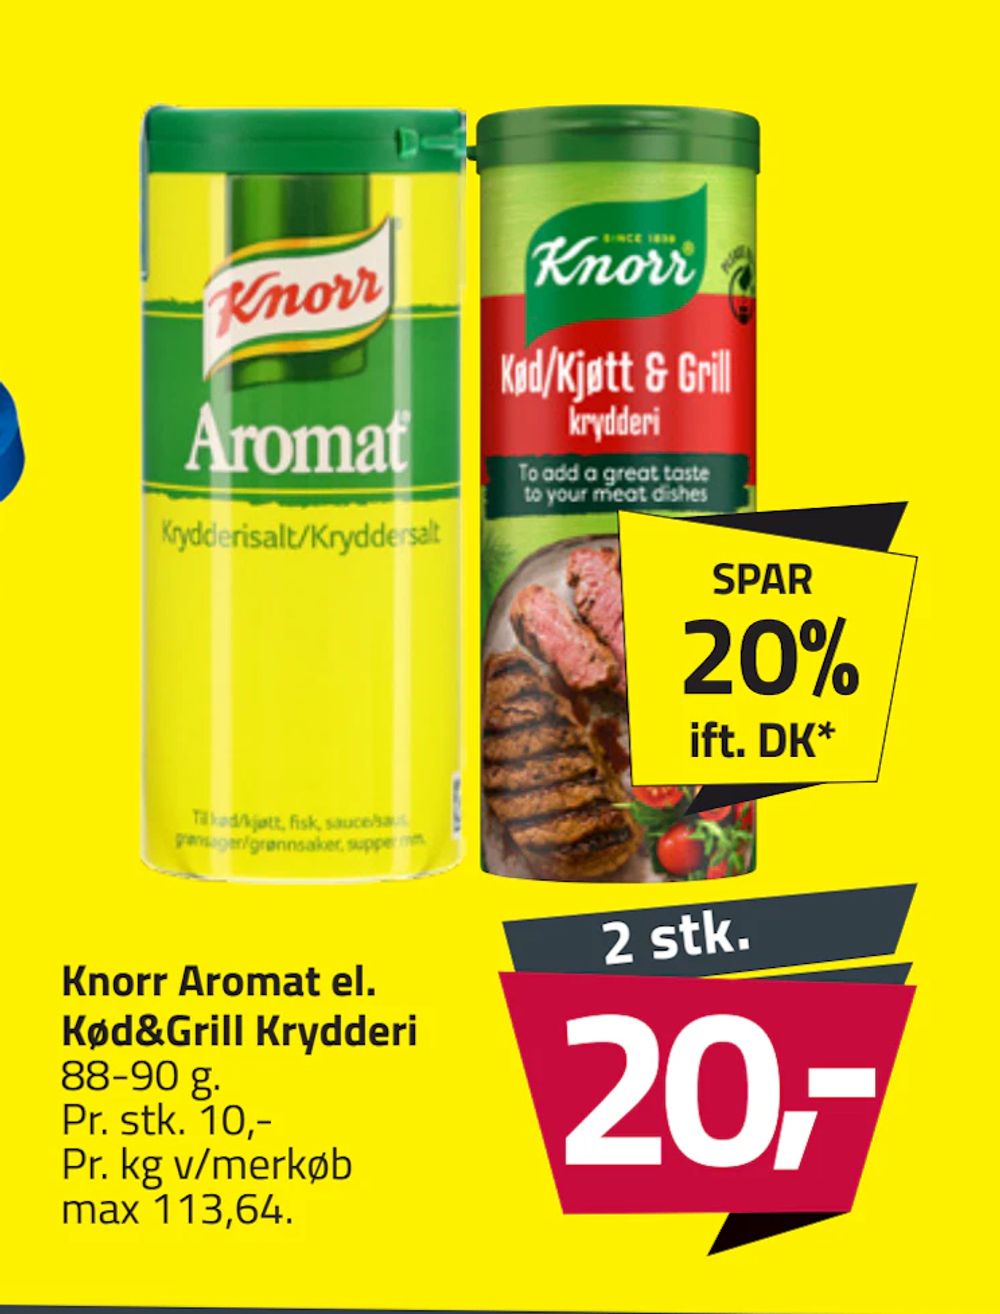 Tilbud på Knorr Aromat el. Kød&Grill Krydderi fra Fleggaard til 20 kr.